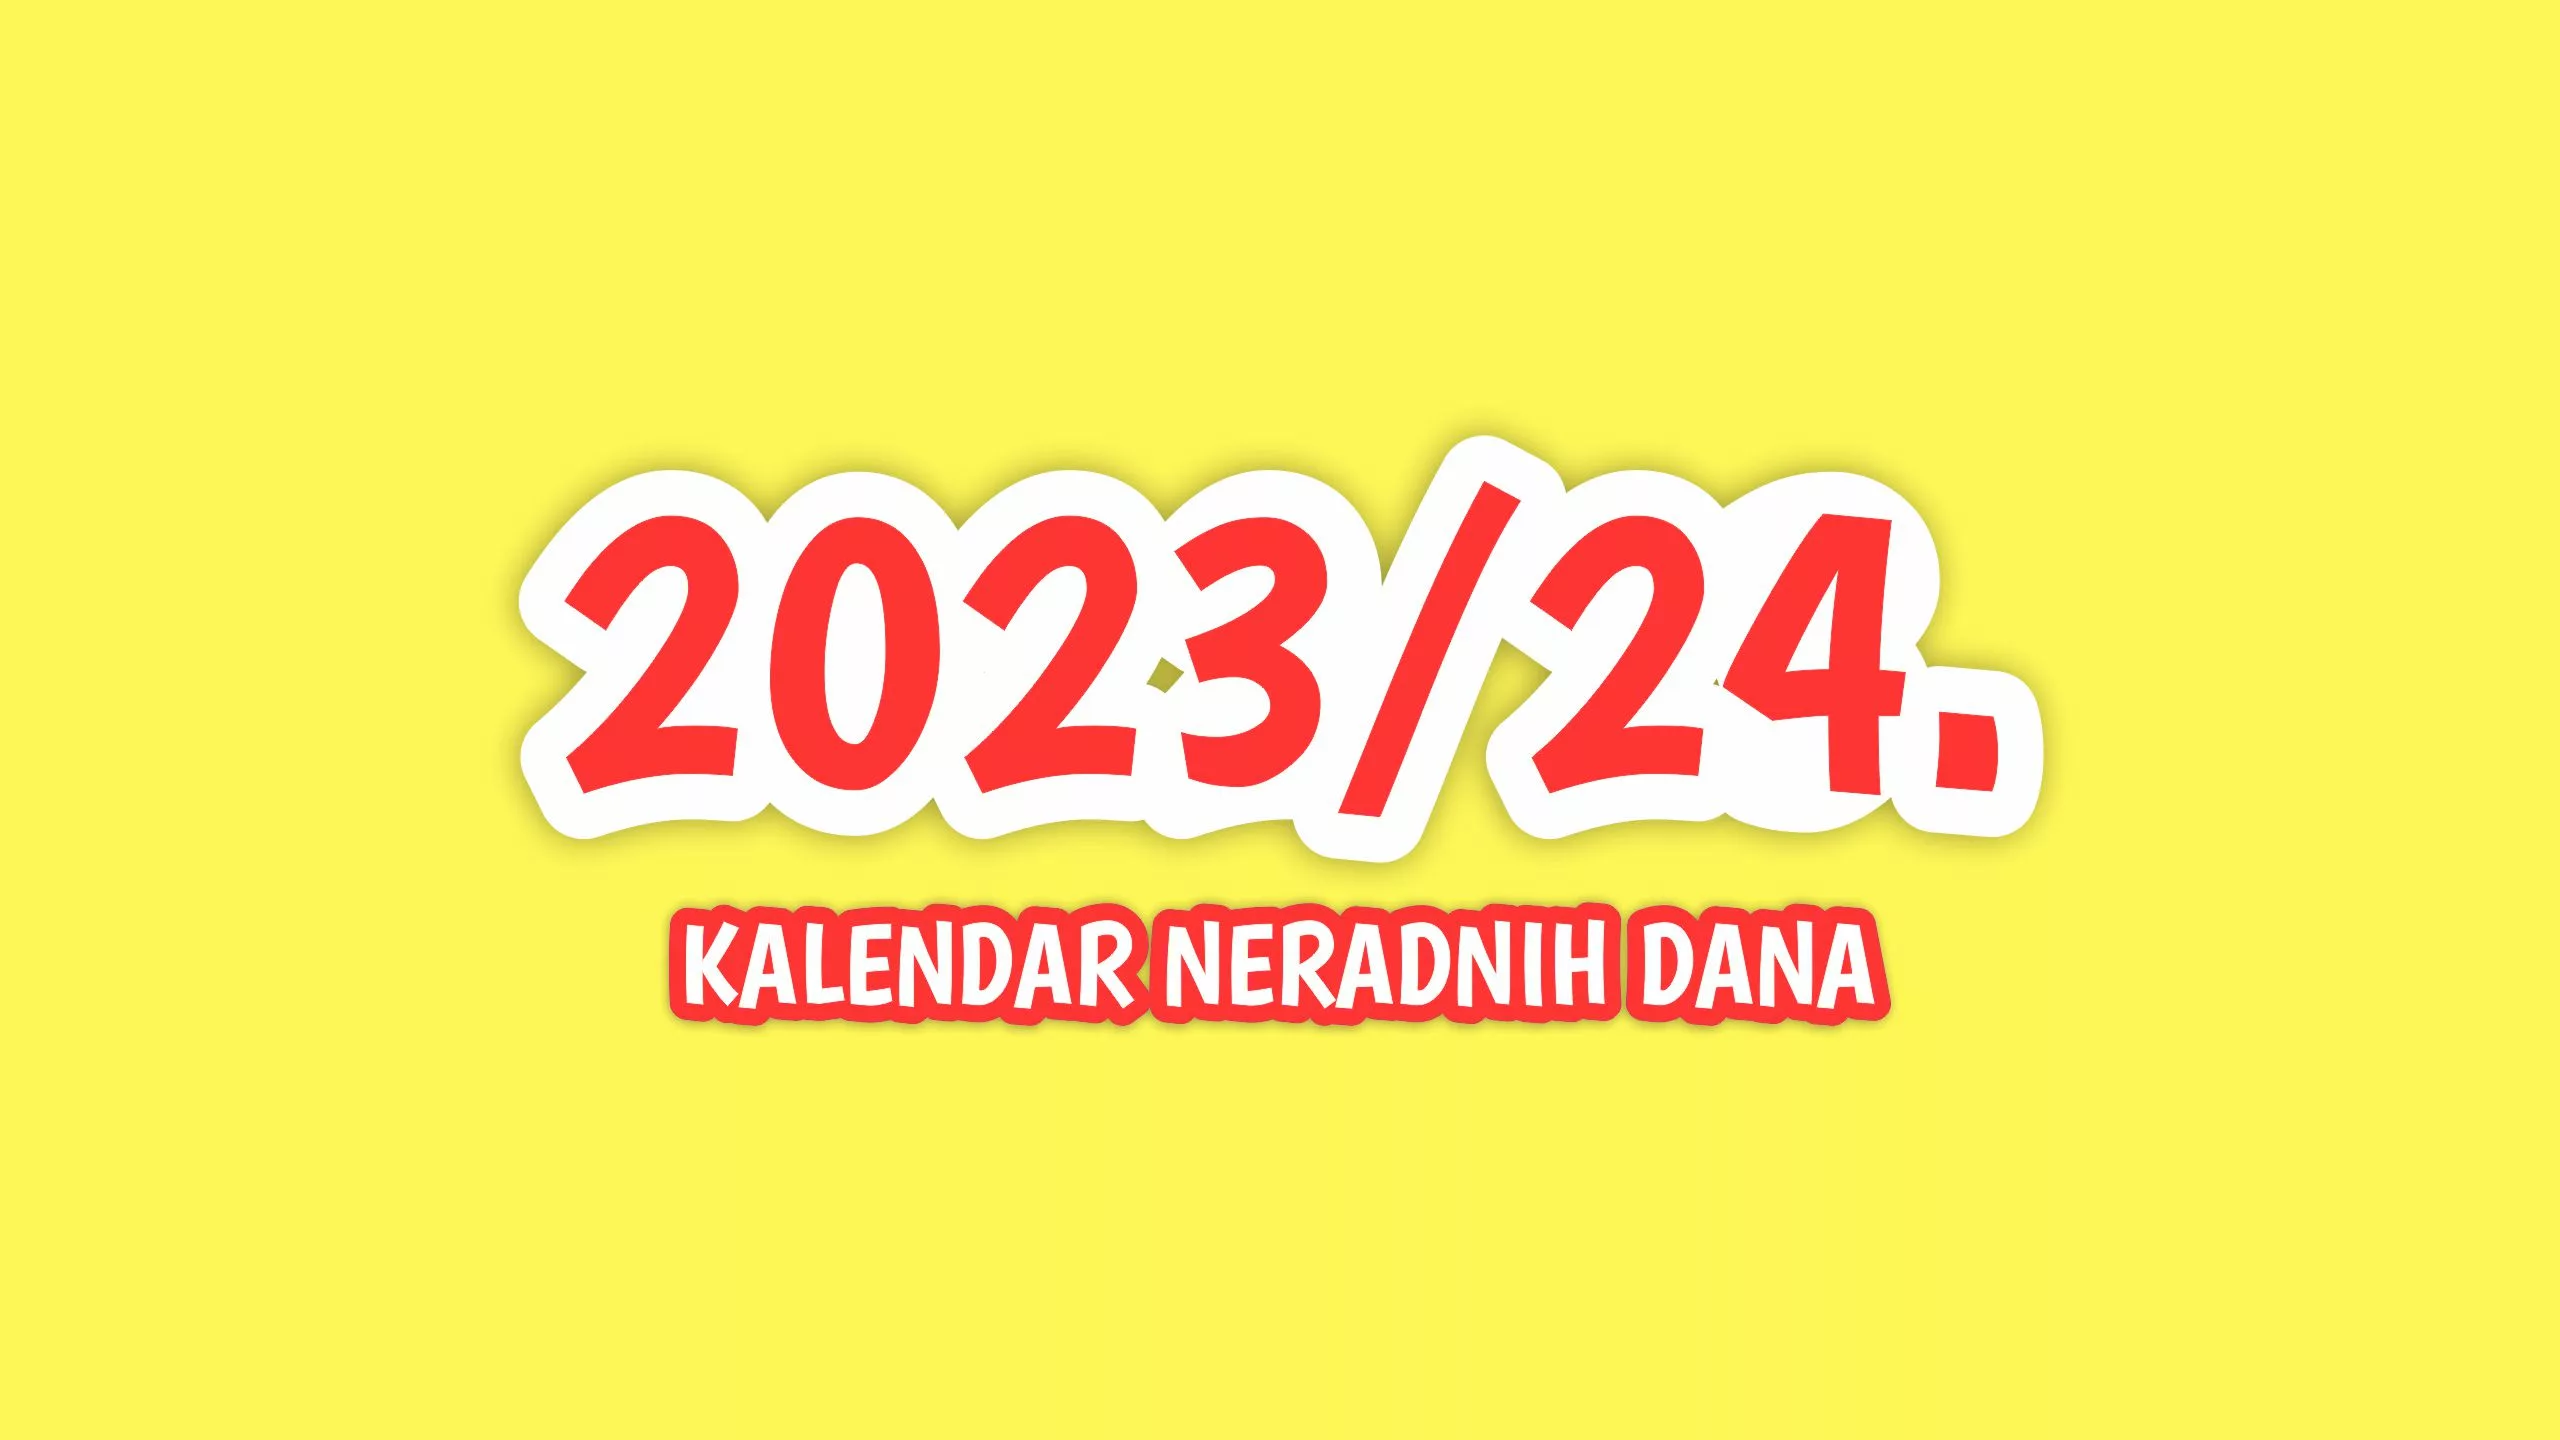 Kalendar neradnih dana za školsku godinu 2023/2024.